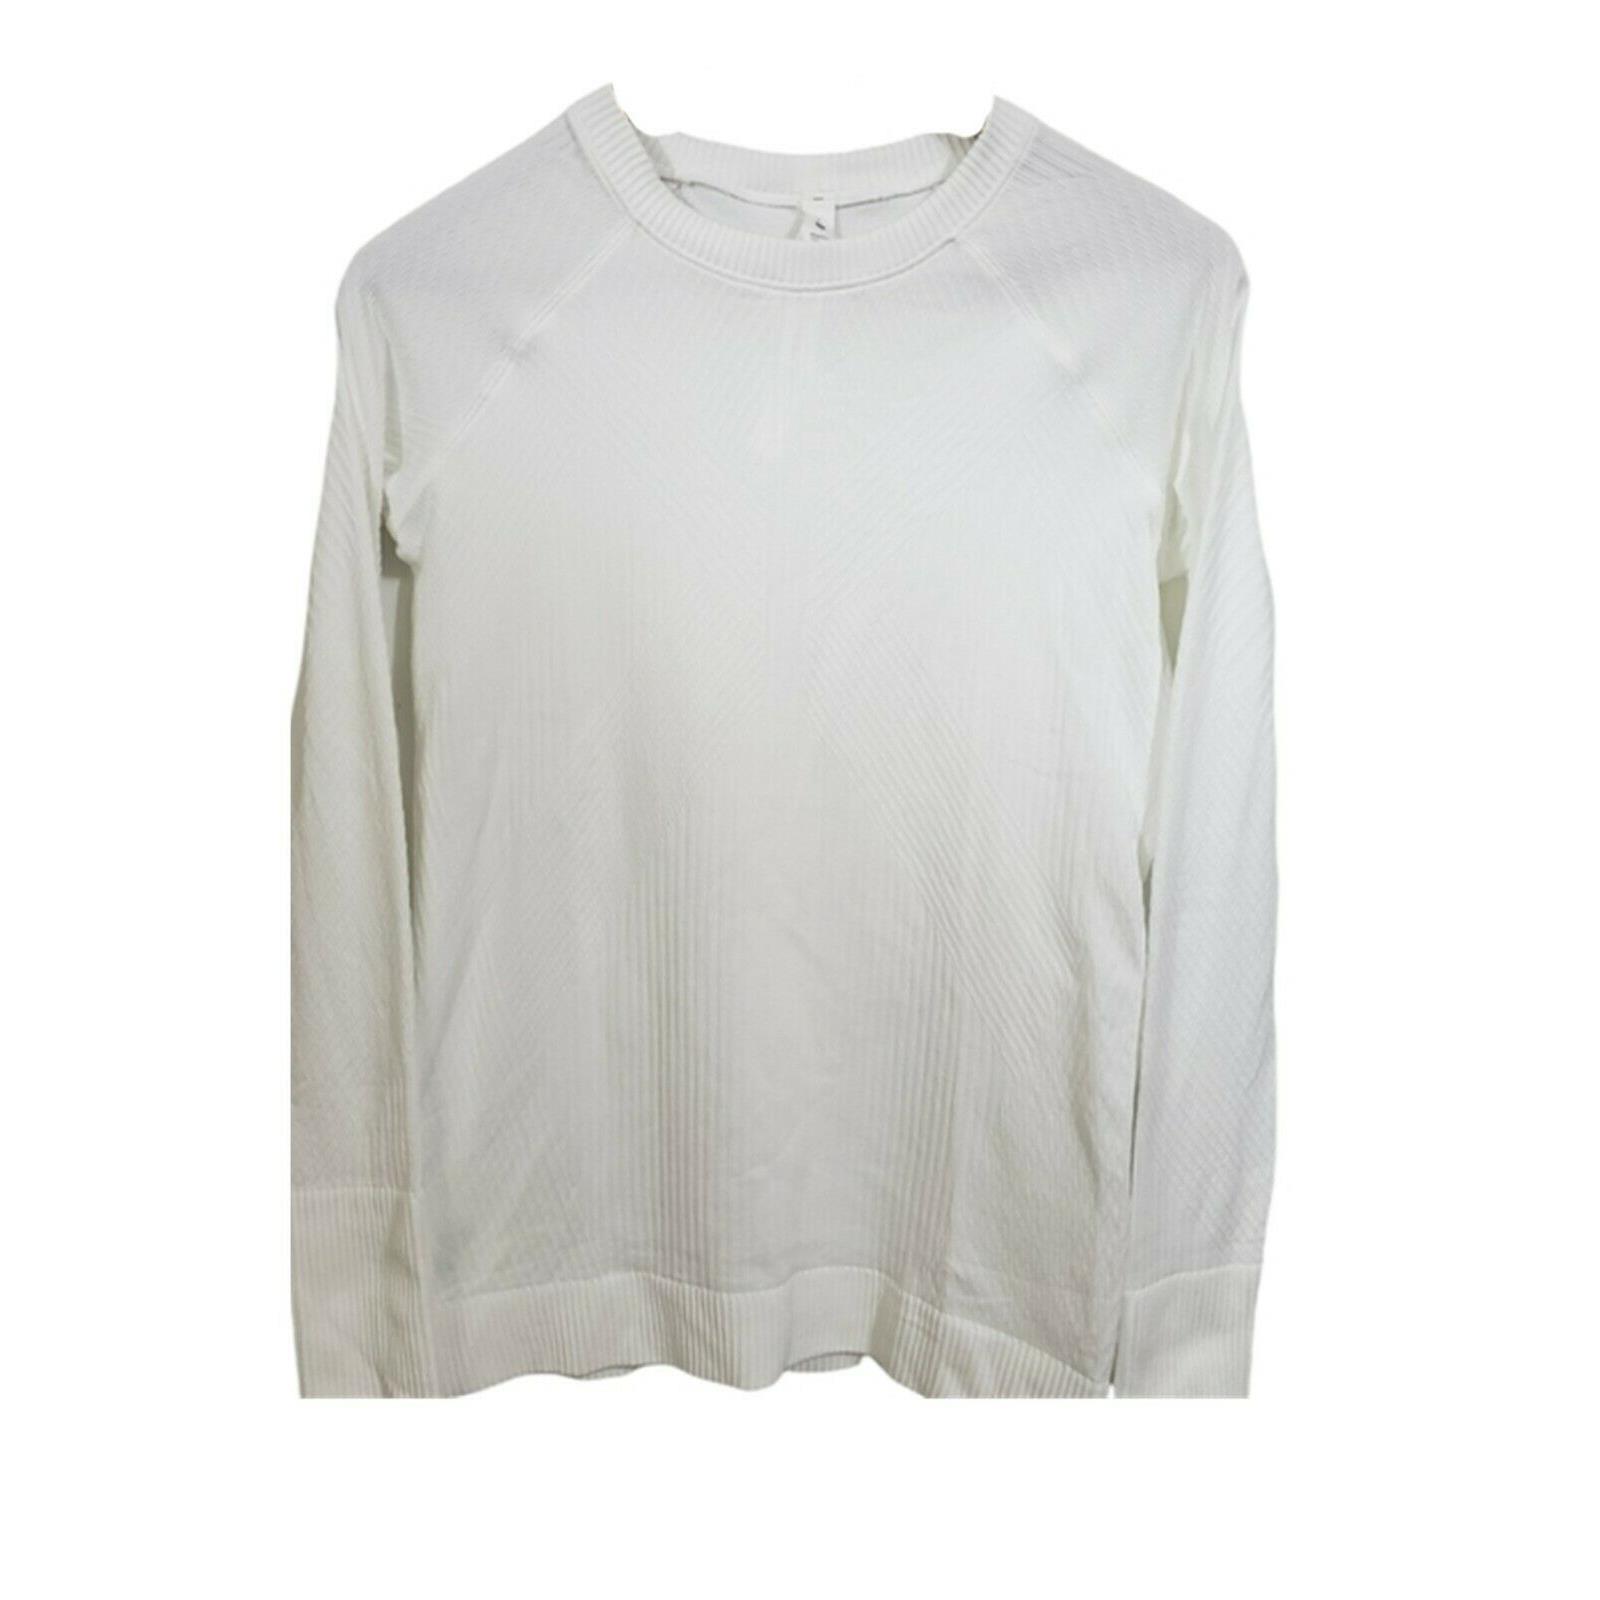 Lululemon Rest Less Pullover Long Sleeve White- Size 6